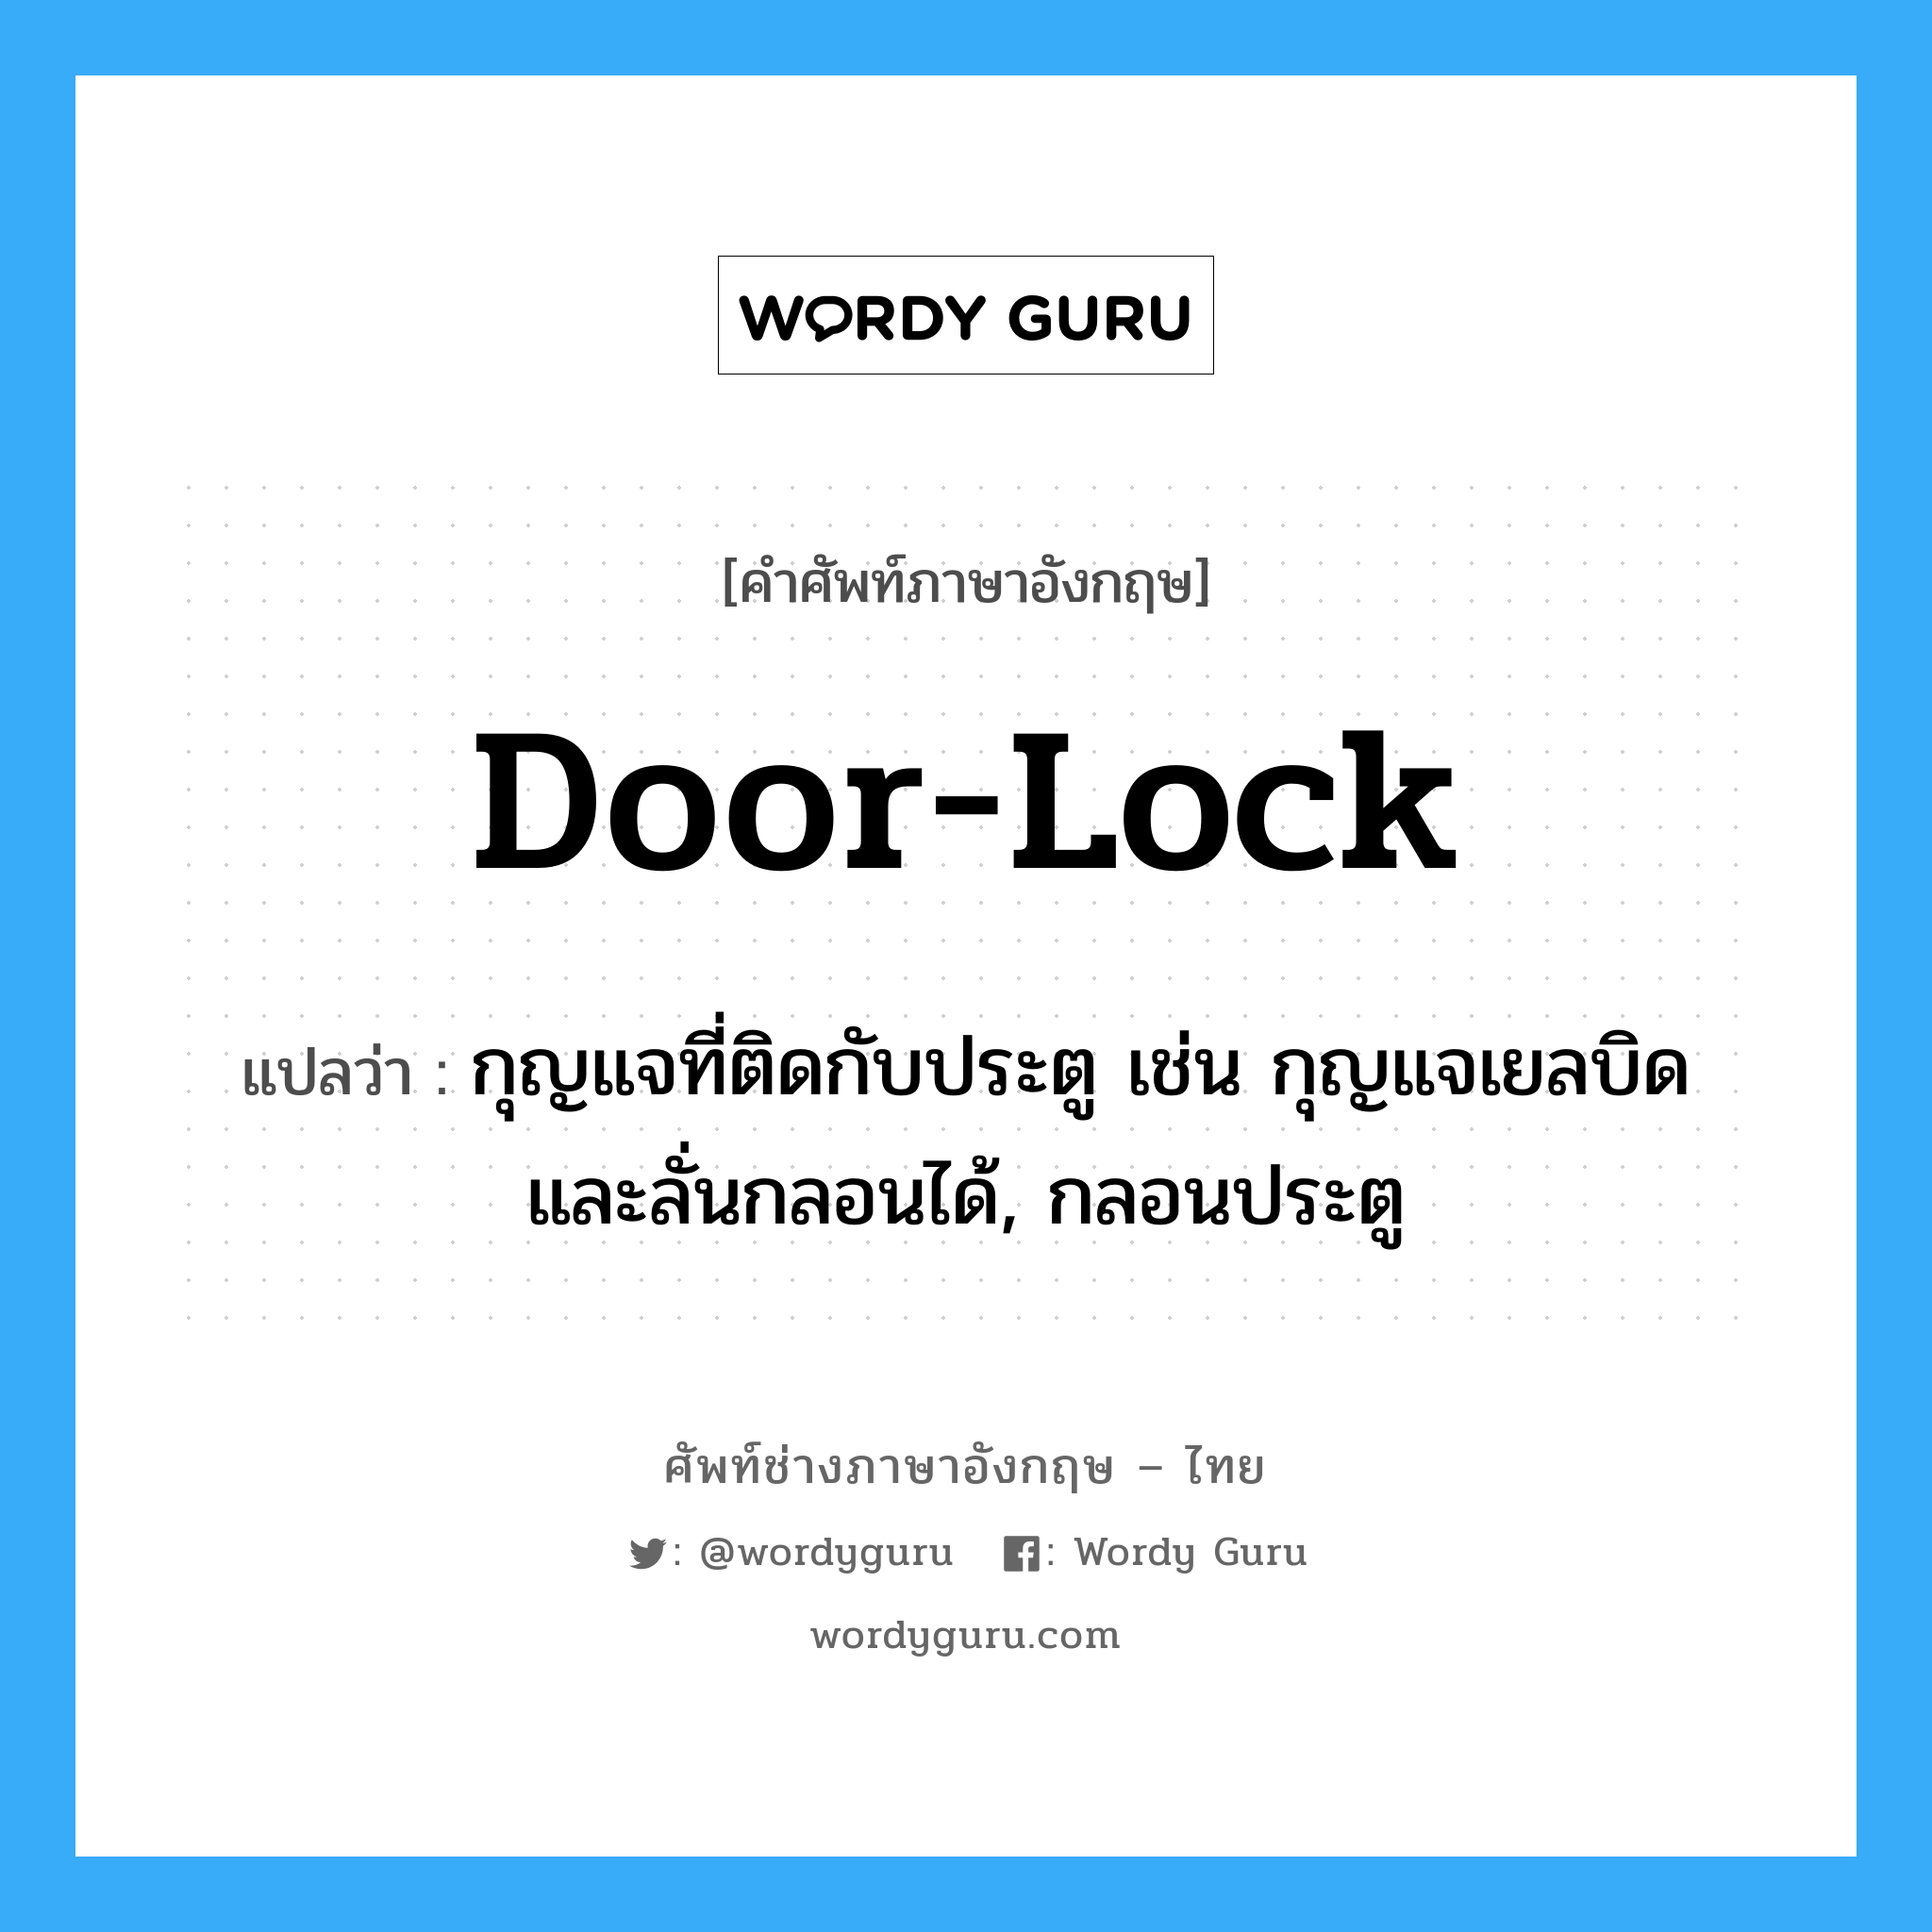 กุญแจที่ติดกับประตู เช่น กุญแจเยลบิด และลั่นกลอนได้, กลอนประตู ภาษาอังกฤษ?, คำศัพท์ช่างภาษาอังกฤษ - ไทย กุญแจที่ติดกับประตู เช่น กุญแจเยลบิด และลั่นกลอนได้, กลอนประตู คำศัพท์ภาษาอังกฤษ กุญแจที่ติดกับประตู เช่น กุญแจเยลบิด และลั่นกลอนได้, กลอนประตู แปลว่า door-lock